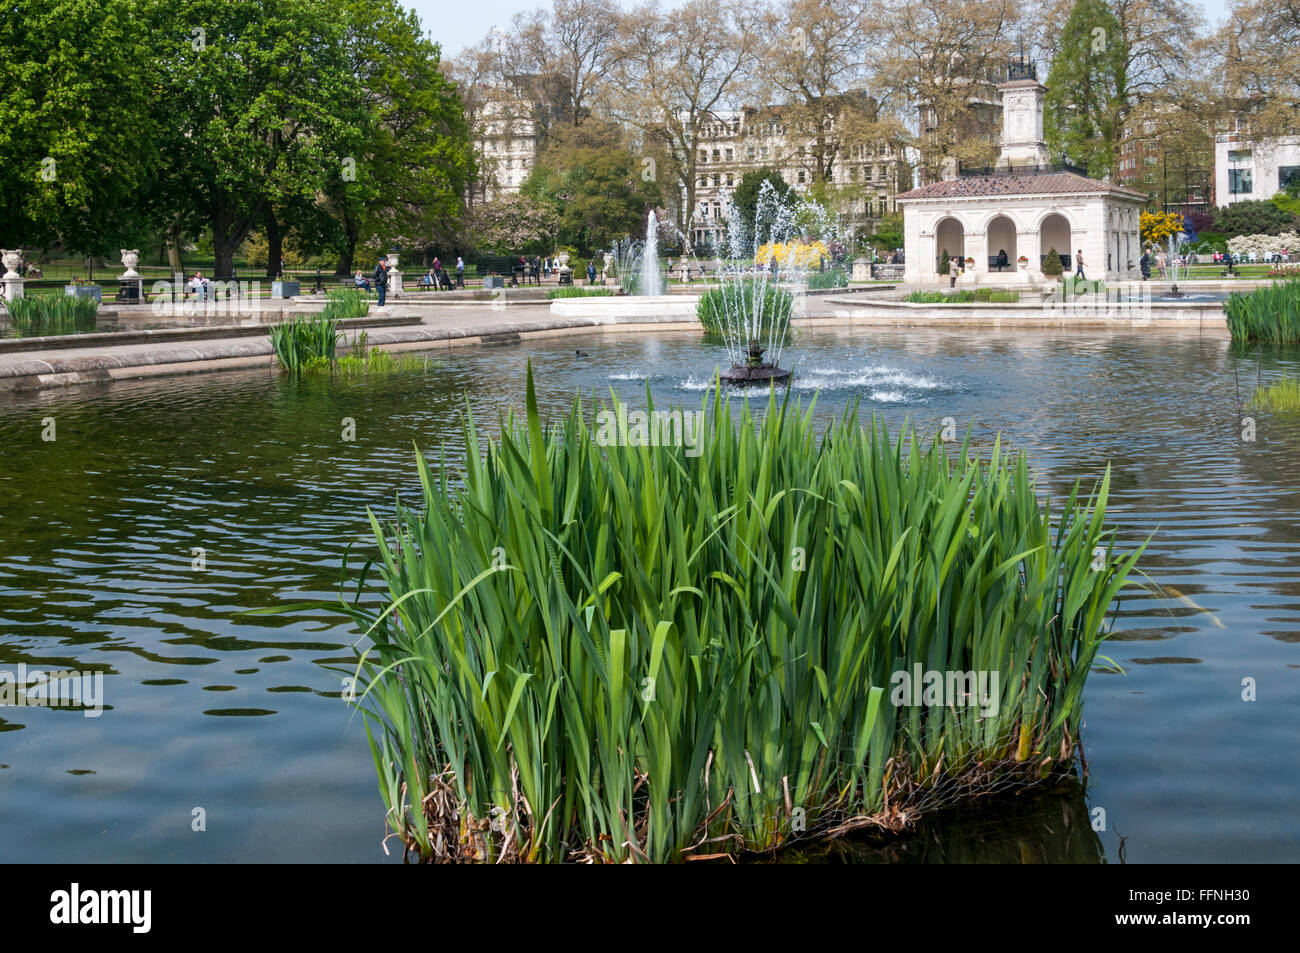 Los jardines italianos al final de la larga presencia de agua en los jardines de Kensington. Foto de stock